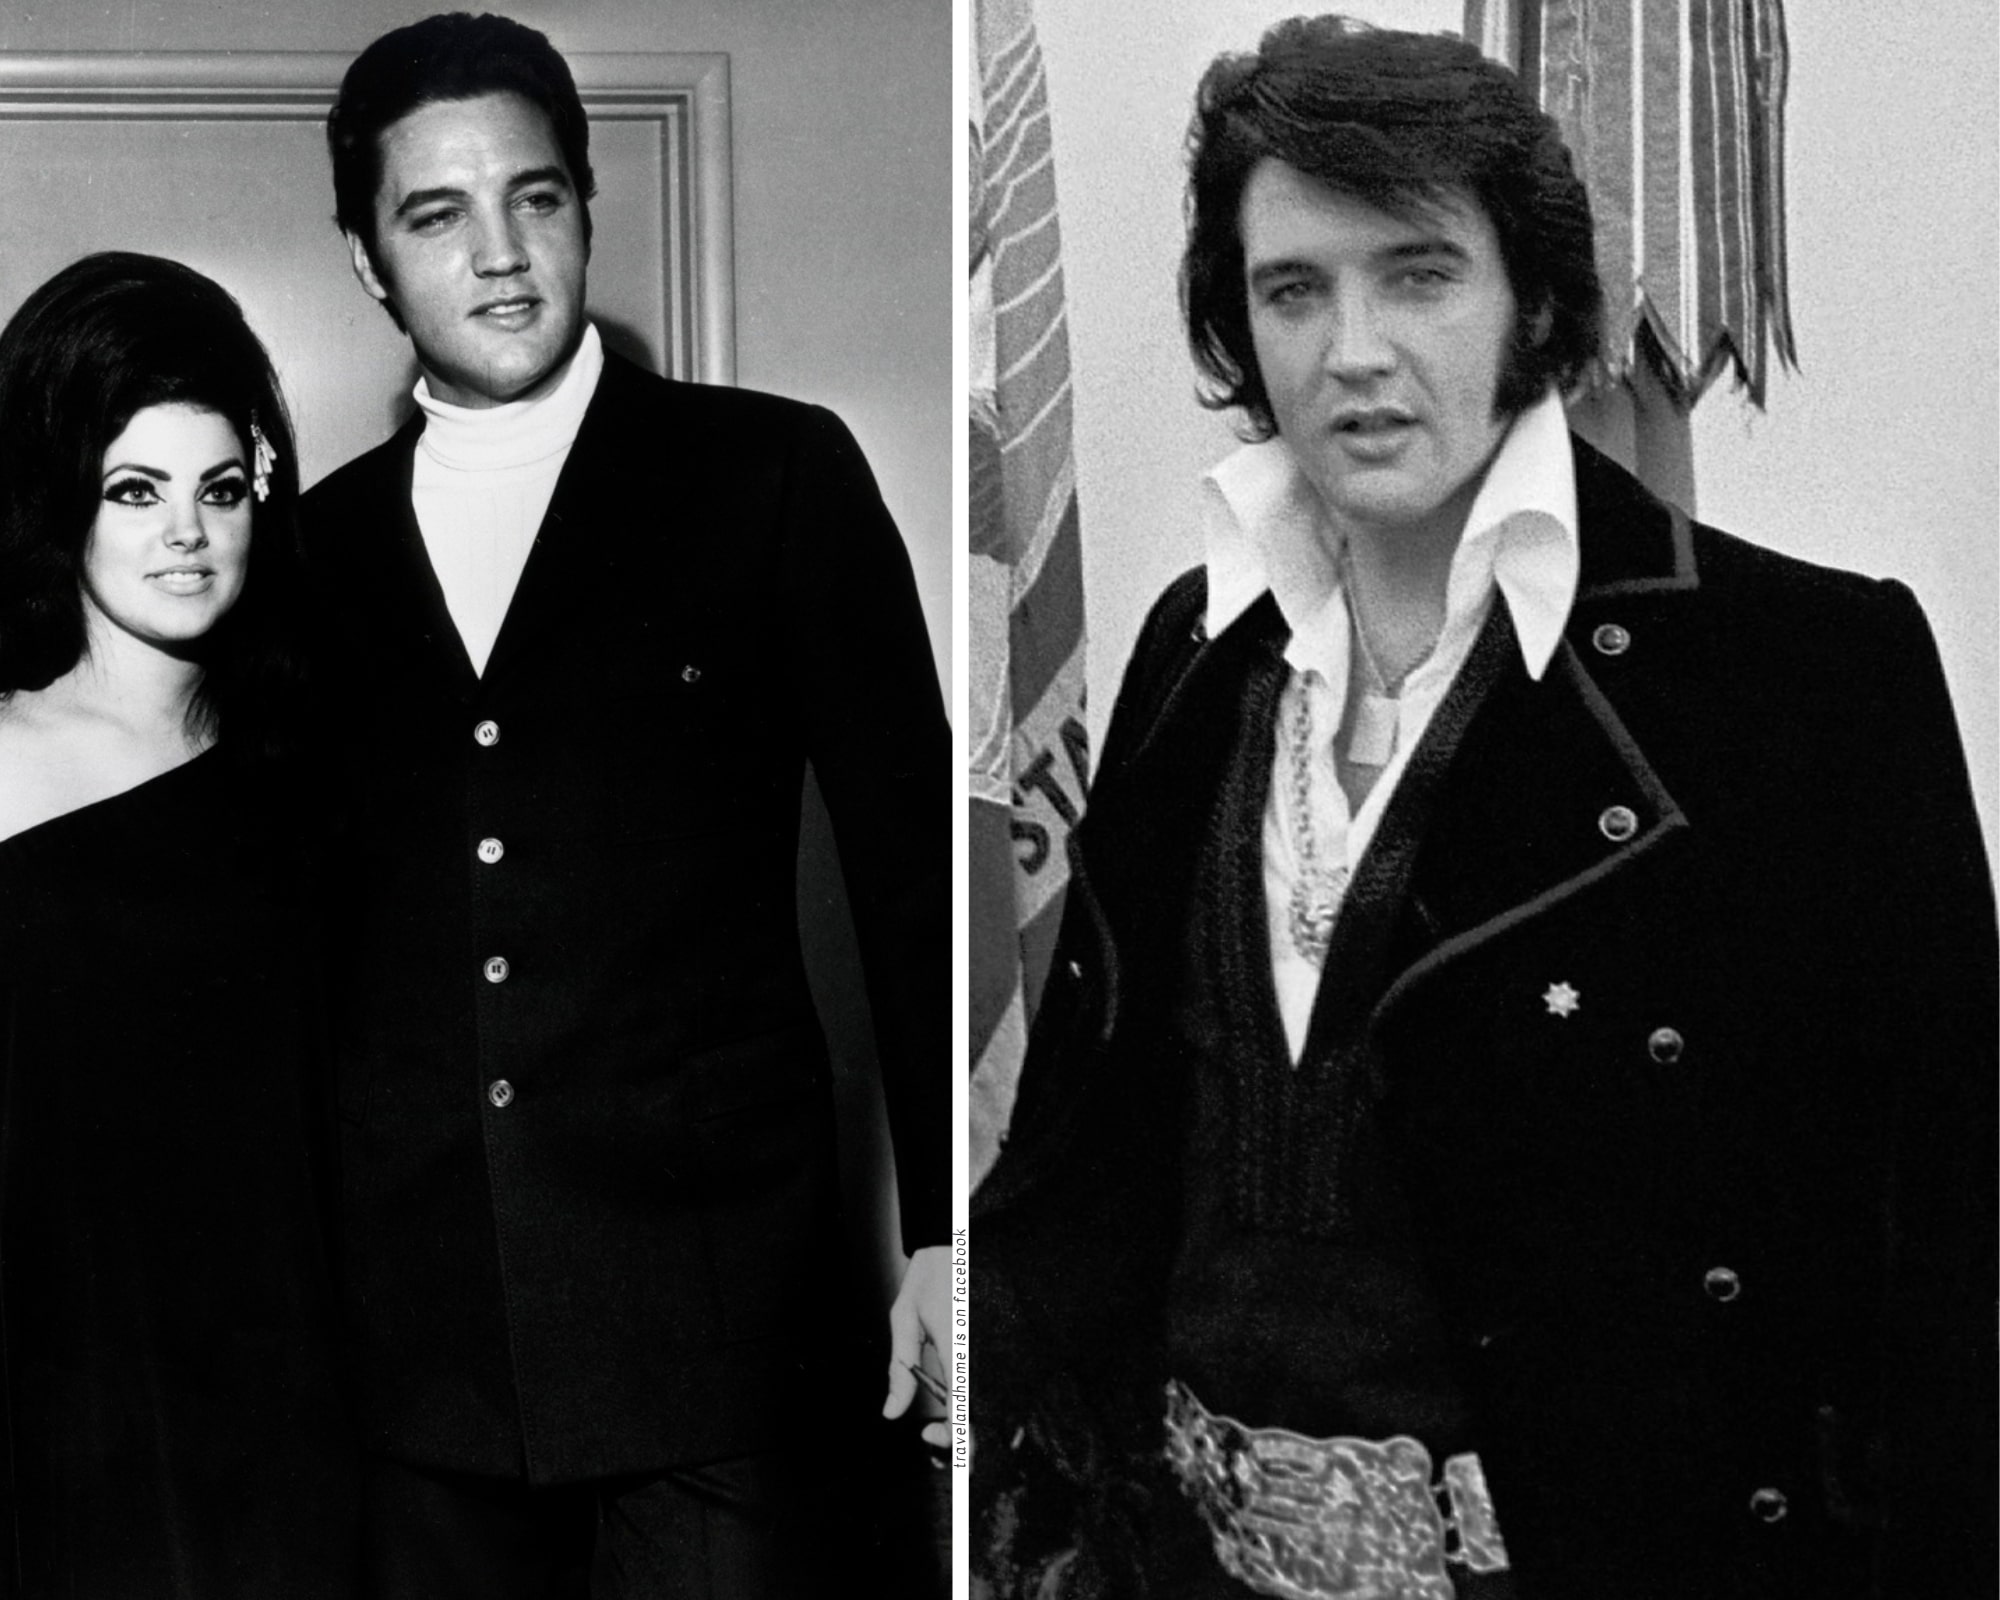 Elvis Presley tour visit Graceland Elvis life min